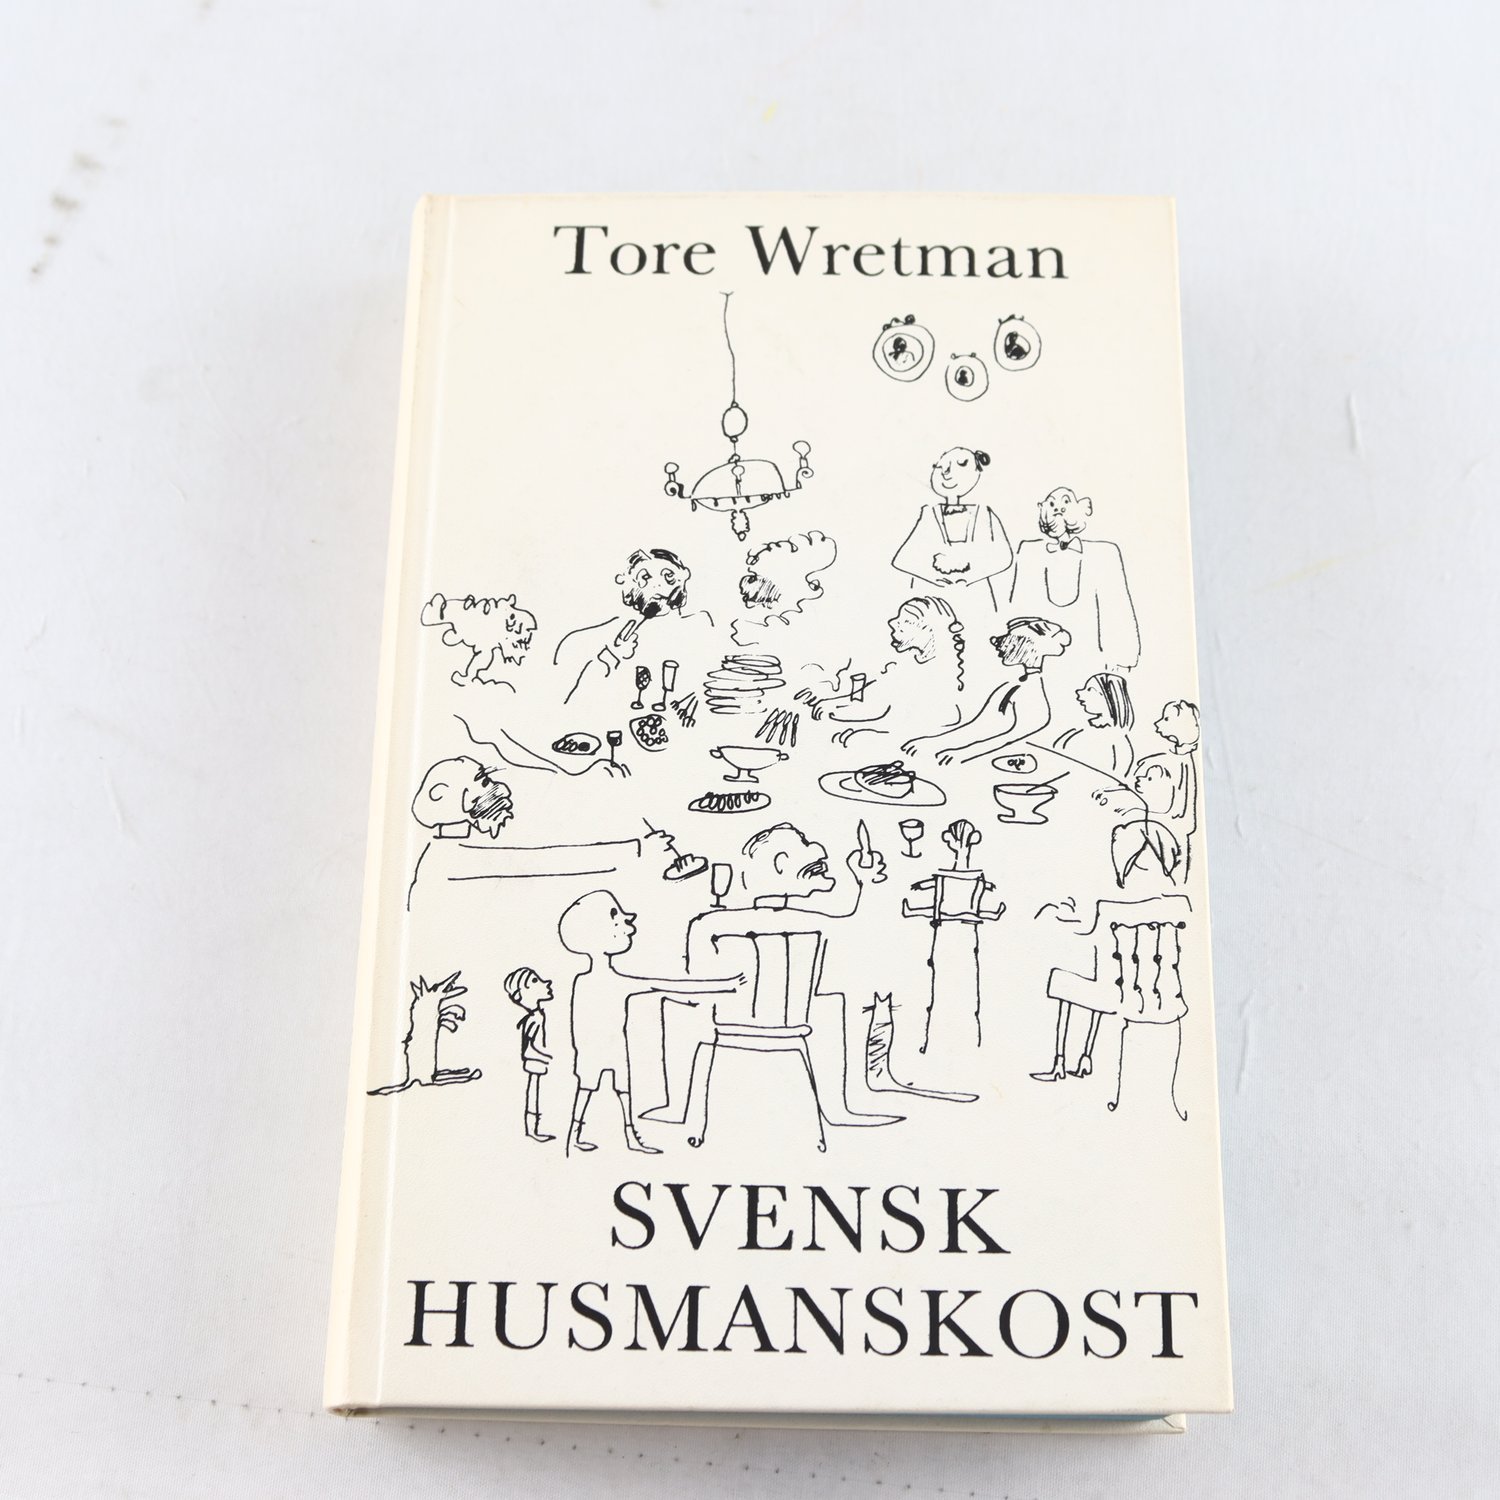 Tore Wretman, Svensk husmanskost